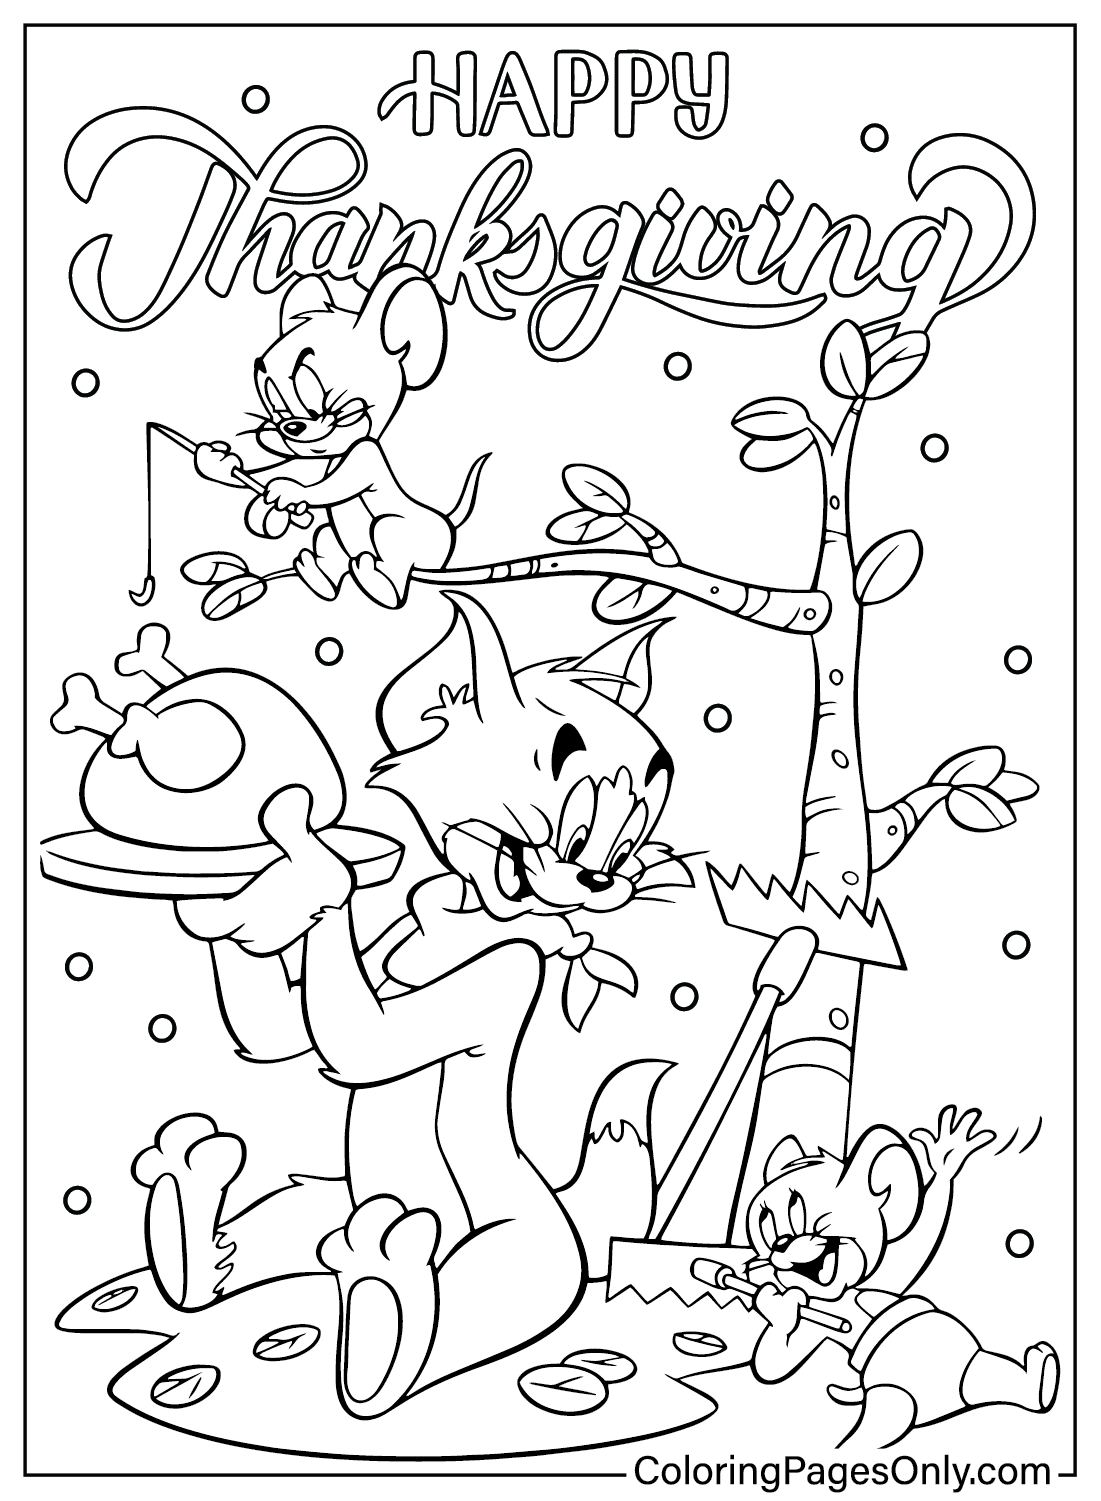 Página para colorir de Tom e Jerry de Ação de Graças do desenho animado de Ação de Graças